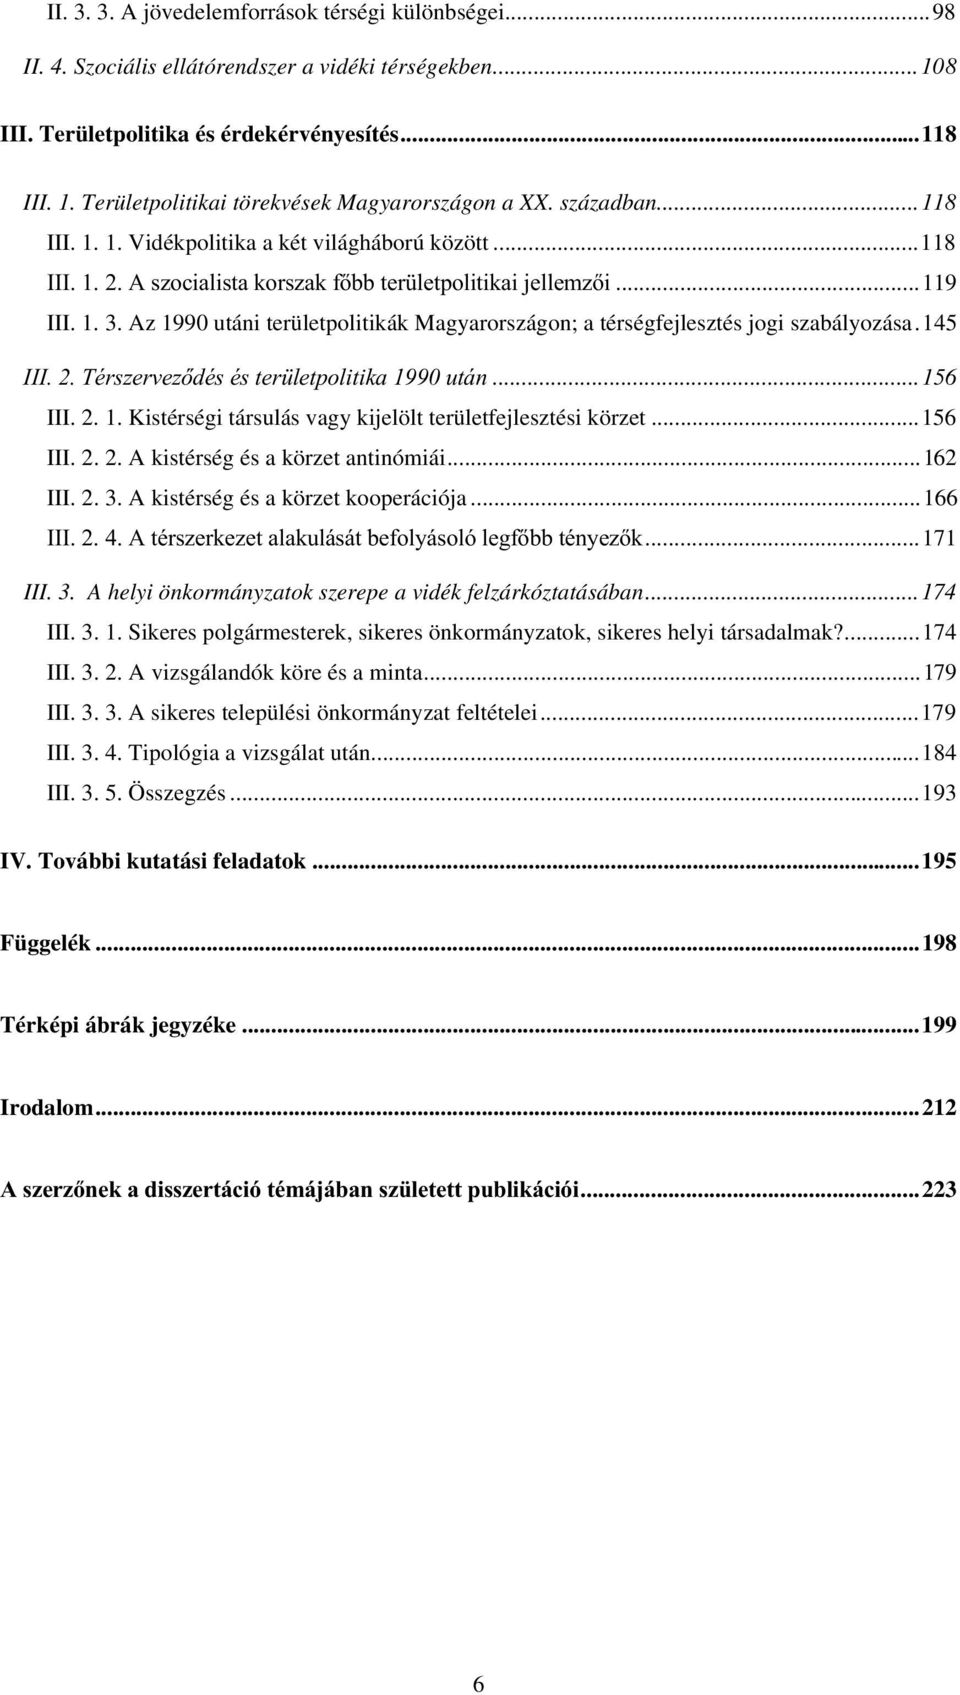 Az 1990 utáni területpolitikák Magyarországon; a térségfejlesztés jogi szabályozása.145,,,7puv]huyh]gpvpvwhu OHWSROLWLNDXWiQ...156 III. 2. 1. Kistérségi társulás vagy kijelölt területfejlesztési körzet.